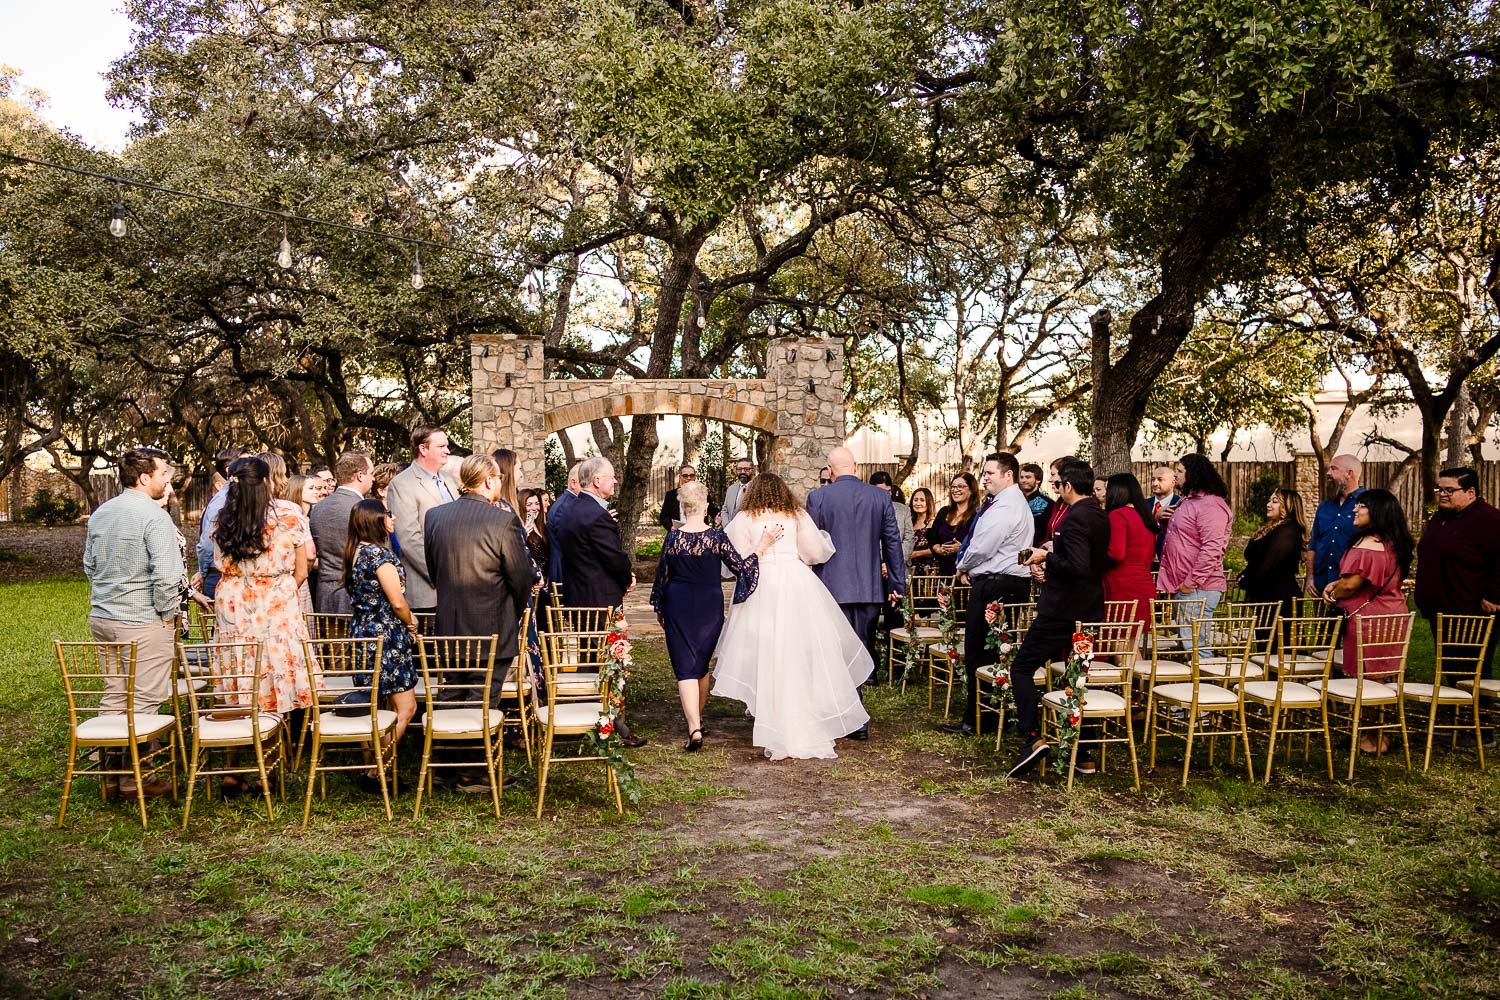 009 The Veranda Wedding + Reception in San Antonio Texas Philip Thomas Photography